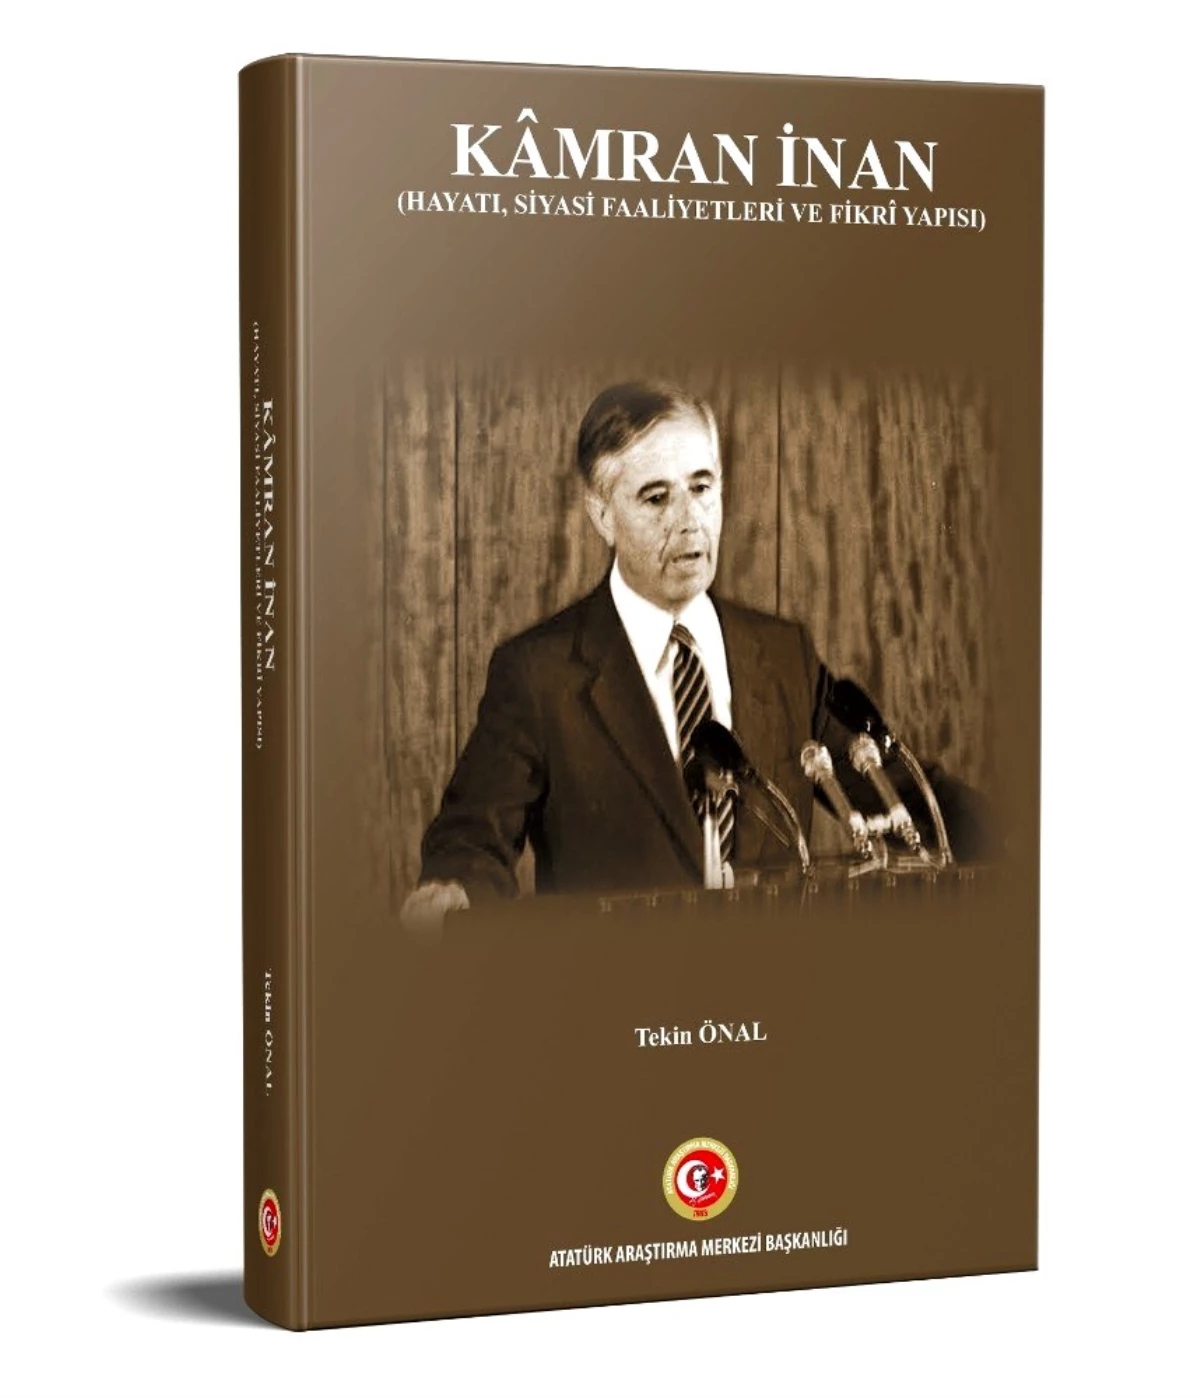 Atatürk Araştırma Merkezinden Yeni Bir Biyografik Eser: "Kâmran İnan (Hayatı, Siyasi Faaliyetleri...